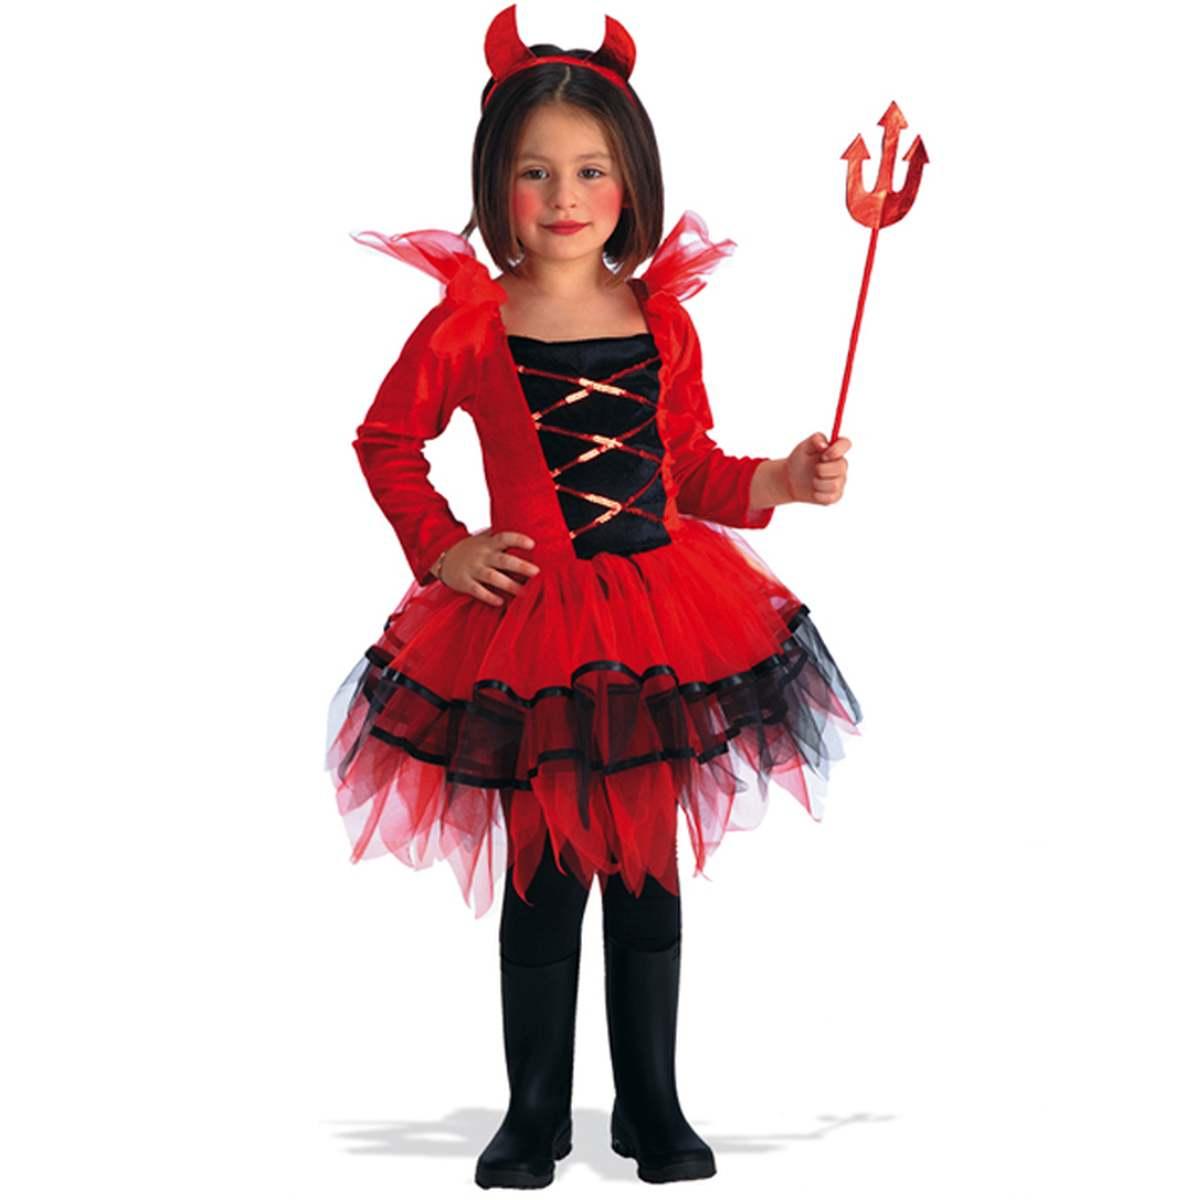 Acquista Online il Costume Diavoletta Devil Girl per Bambina - Carnevale